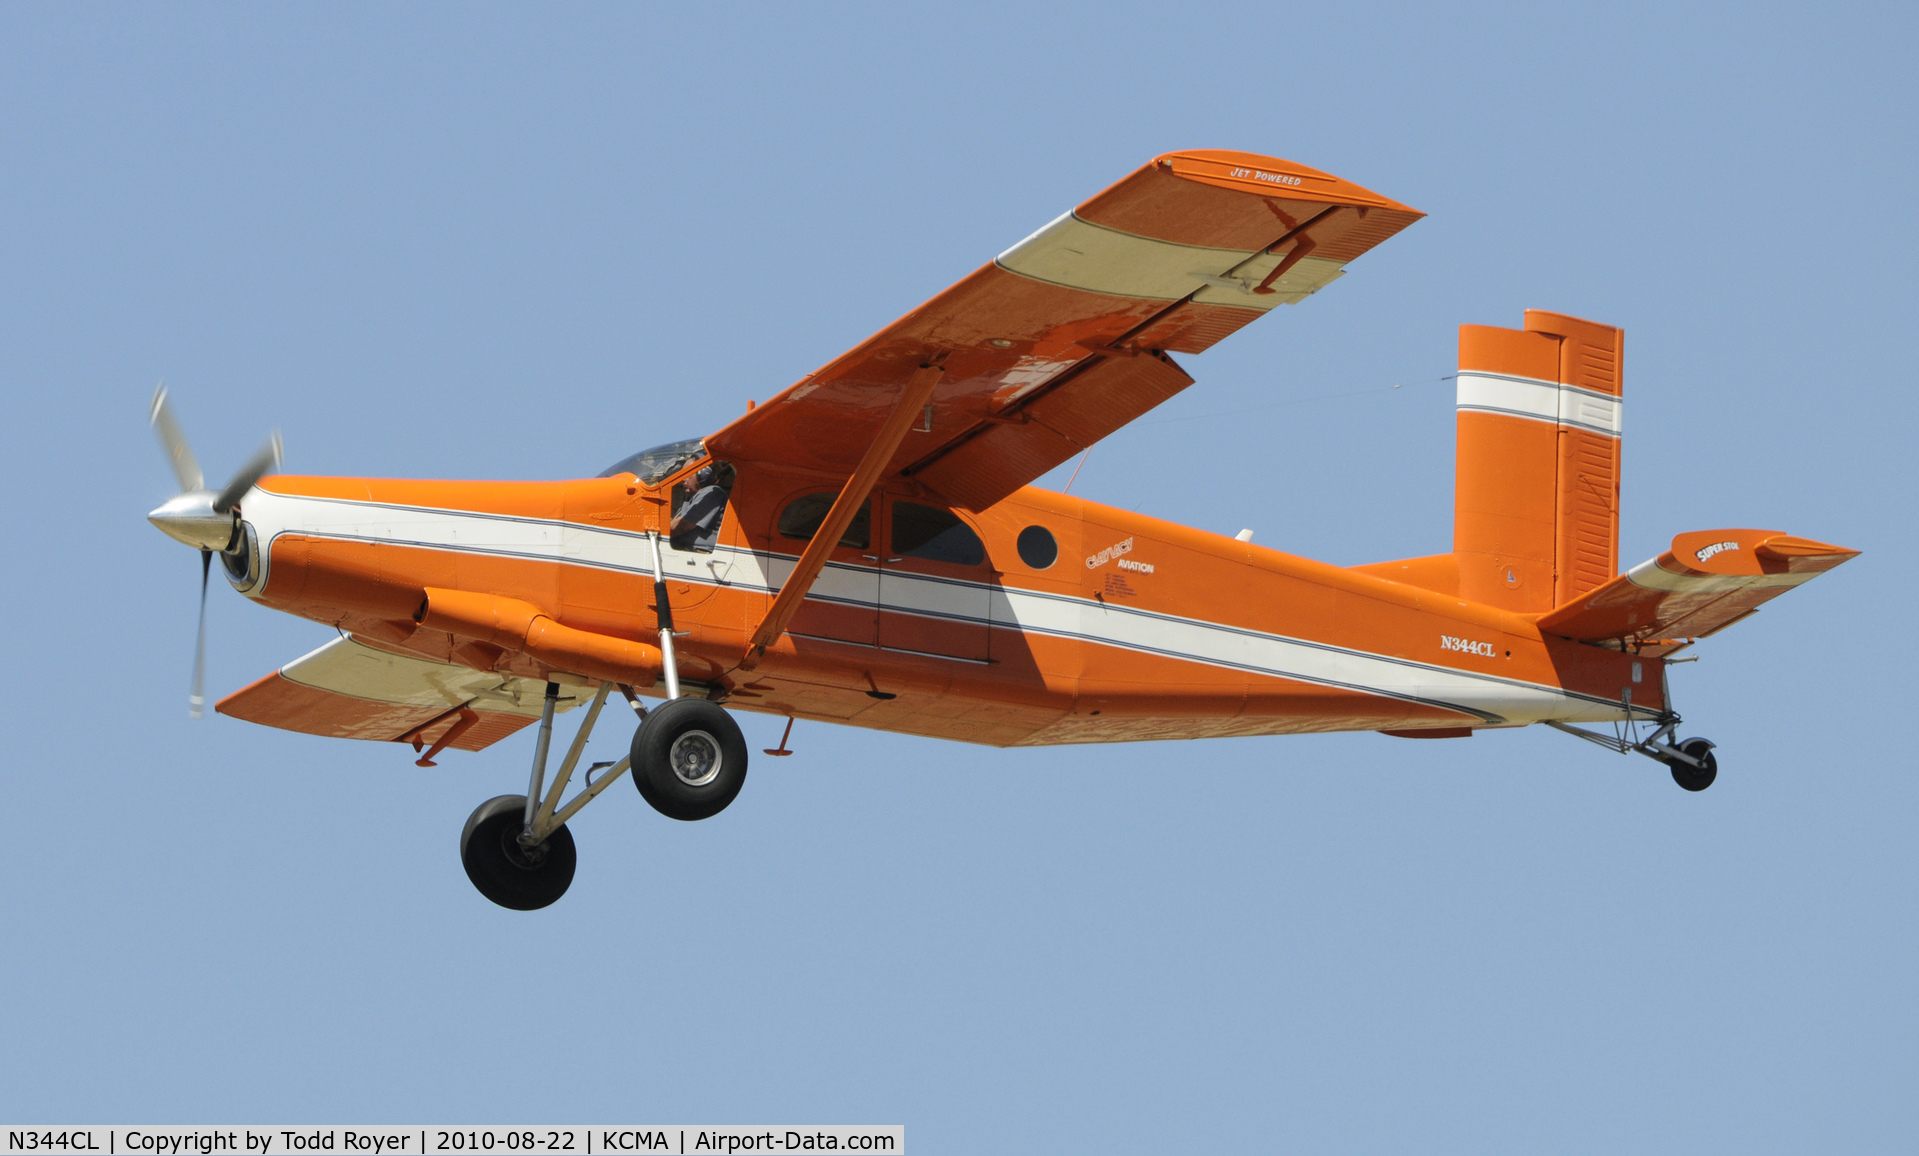 N344CL, 1968 Fairchild PC-6/C2-H2 Heli-Porter C/N 2019, 2010 CAMARILLO AIRSHOW